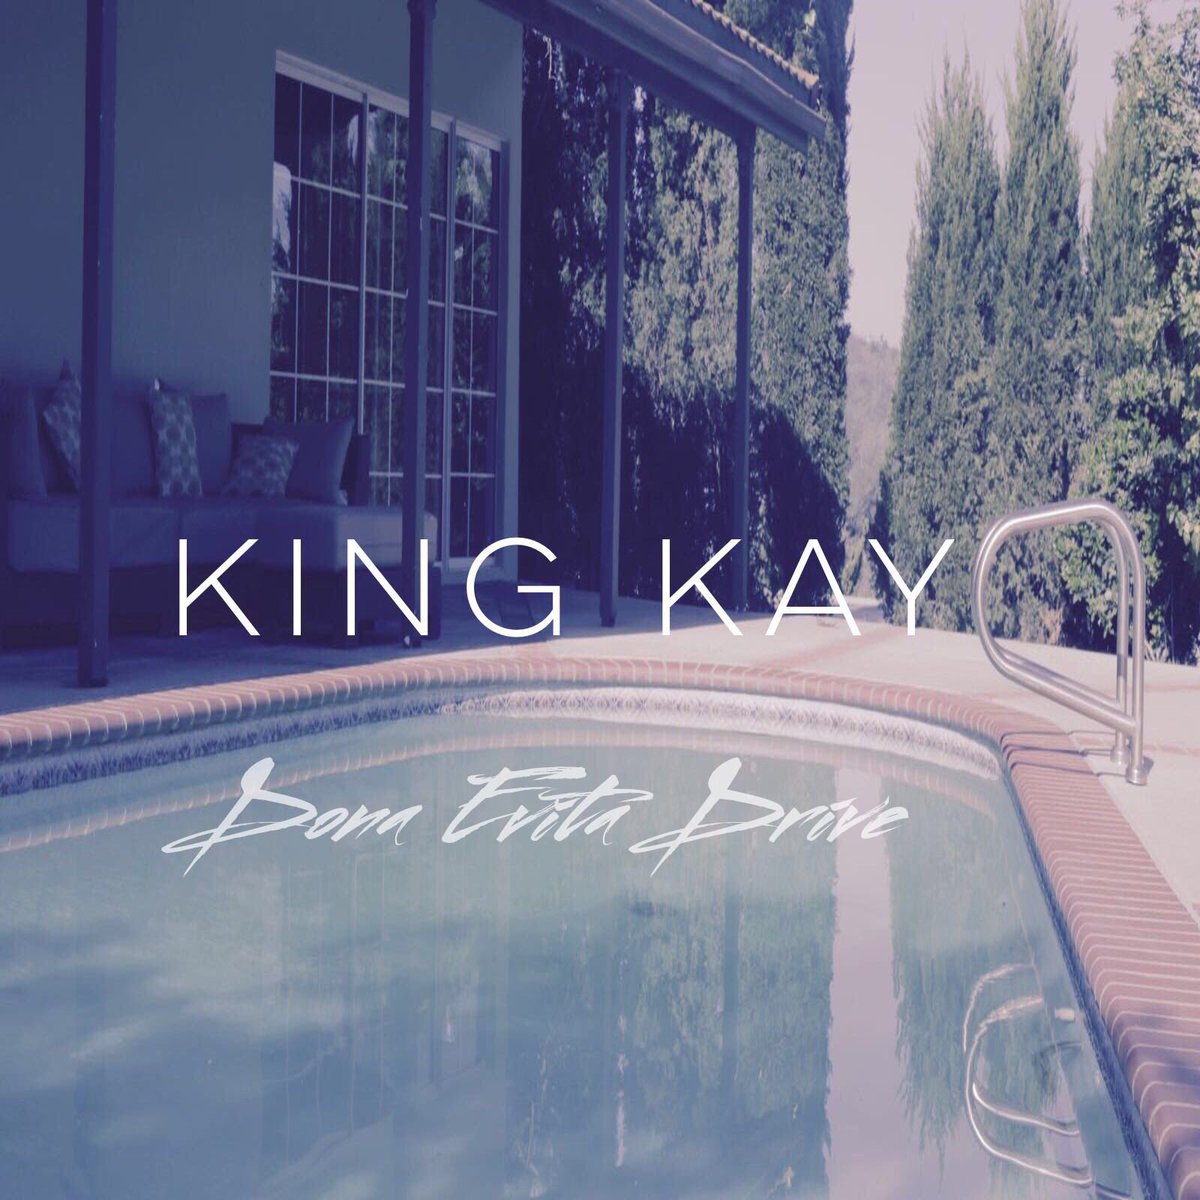 King Kay